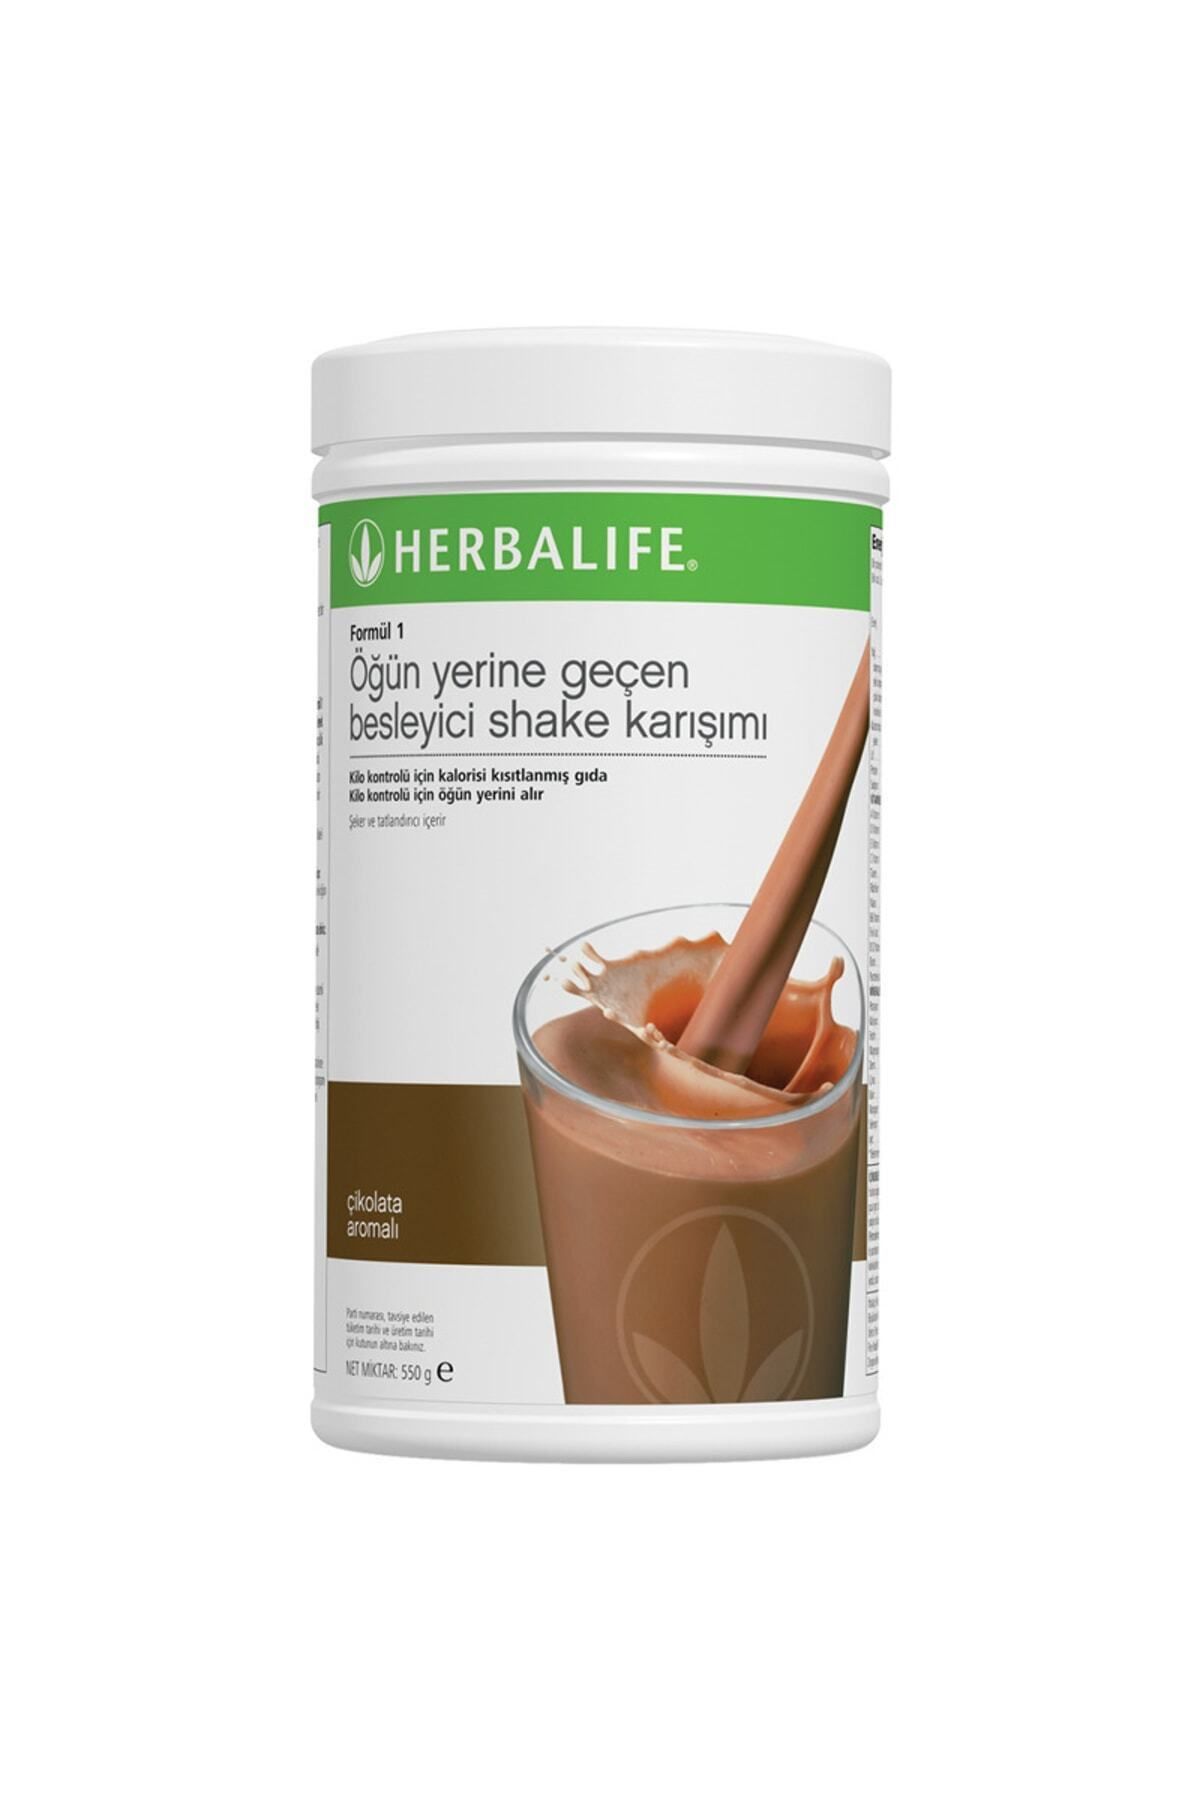 Herbalife Formül 1 Öğün Yerine Geçen Besleyici Shake Karışımı Çikolata 550 Gr